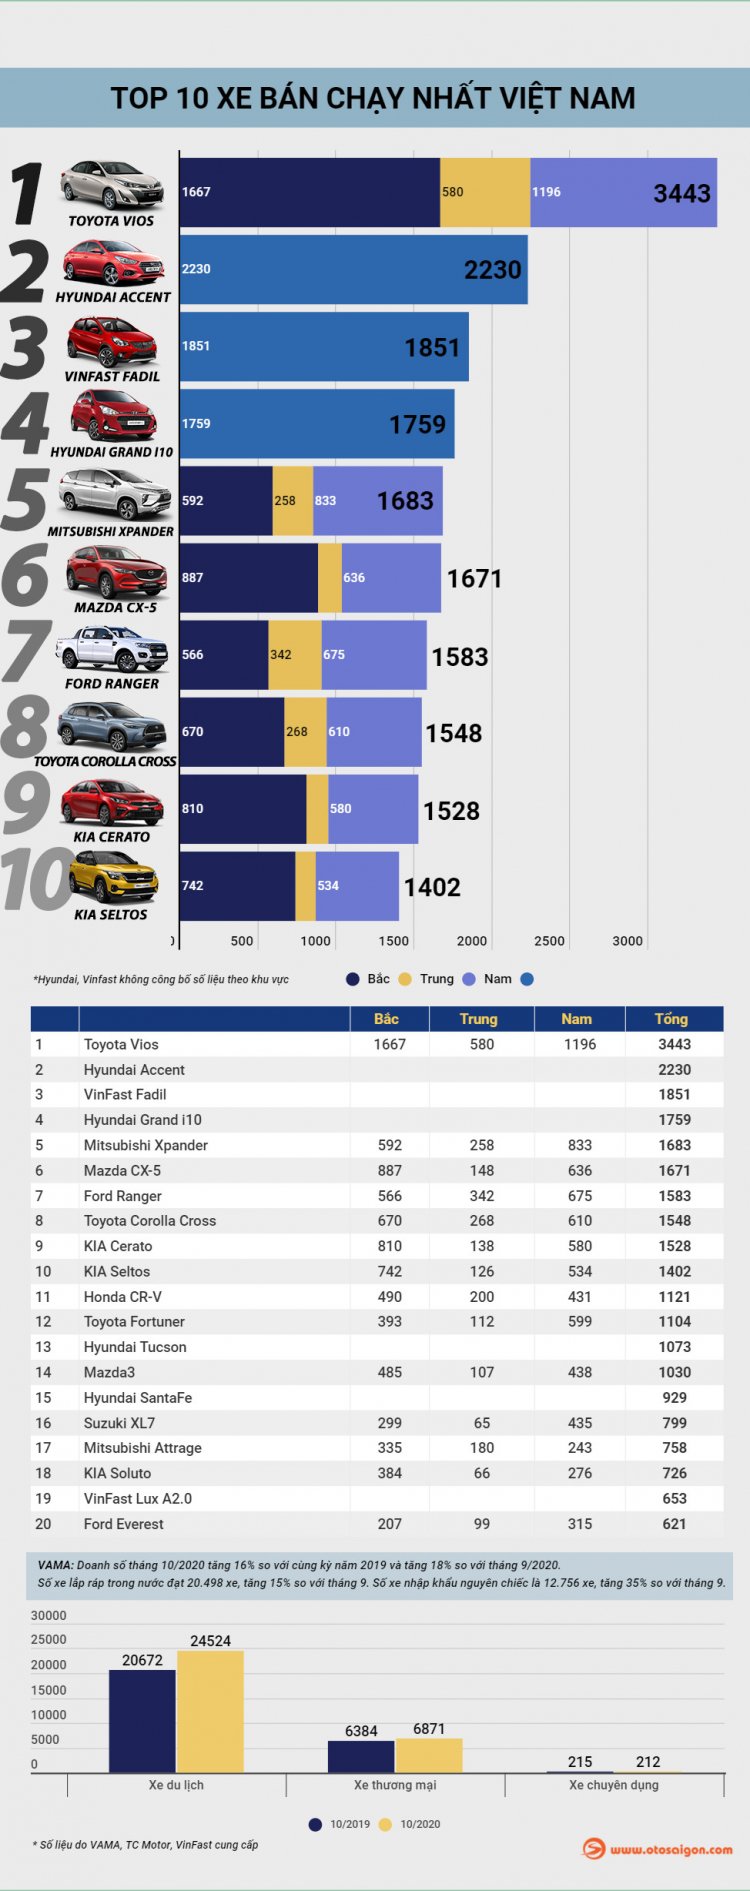 [Infographic] Top 10 xe bán chạy tại Việt Nam tháng 10/2020: Corolla Cross và Seltos lần đầu góp mặt